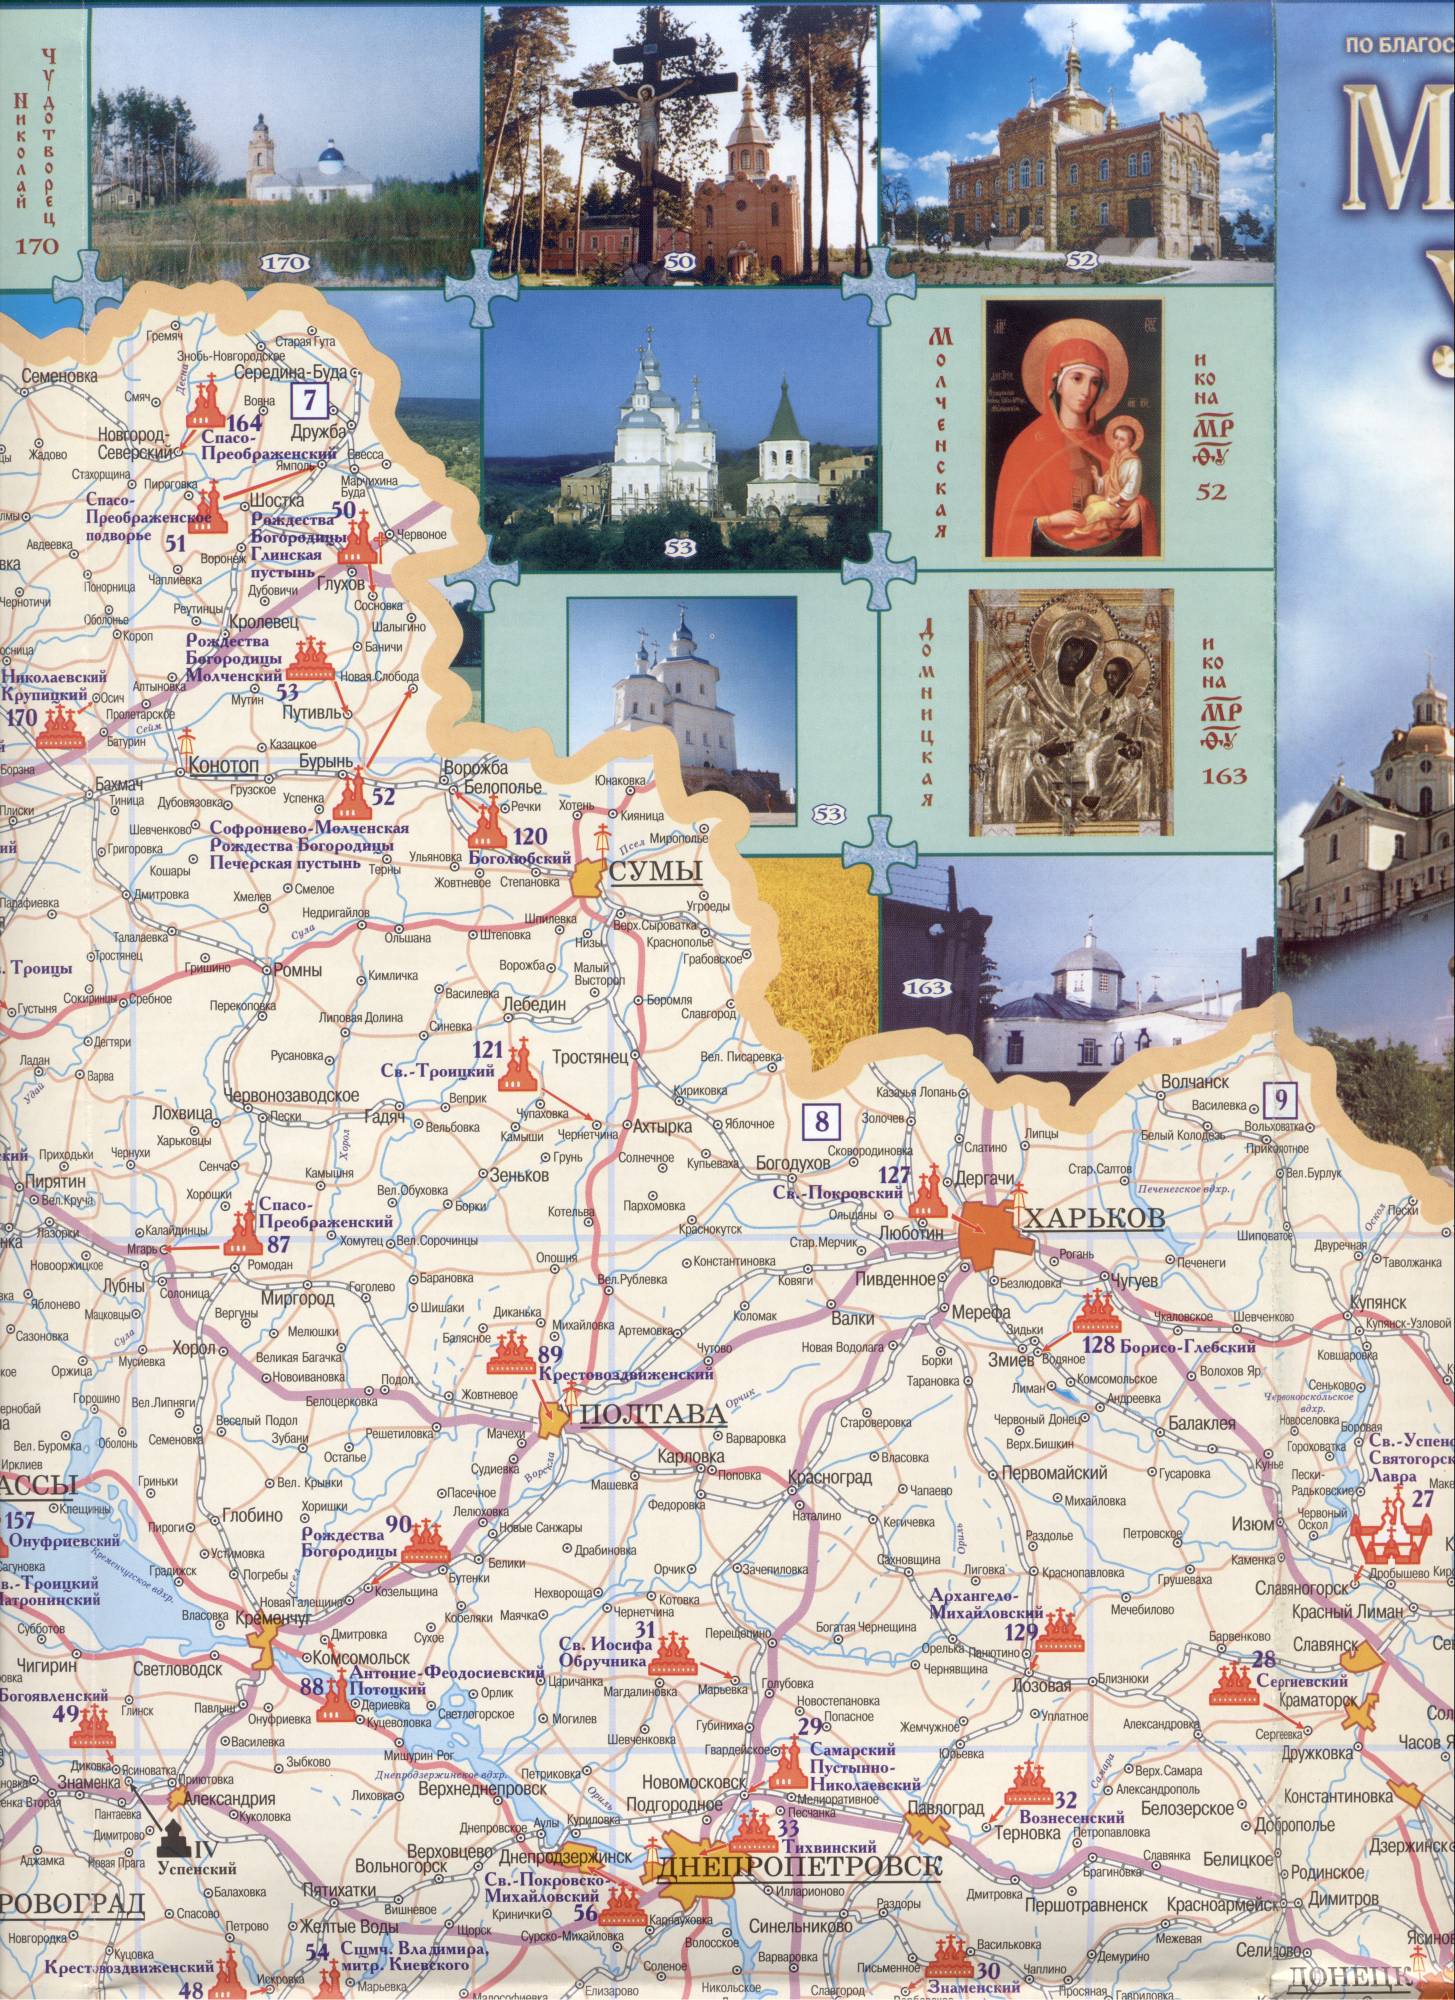 Orthodox monasteries on the map of Ukraine, D0